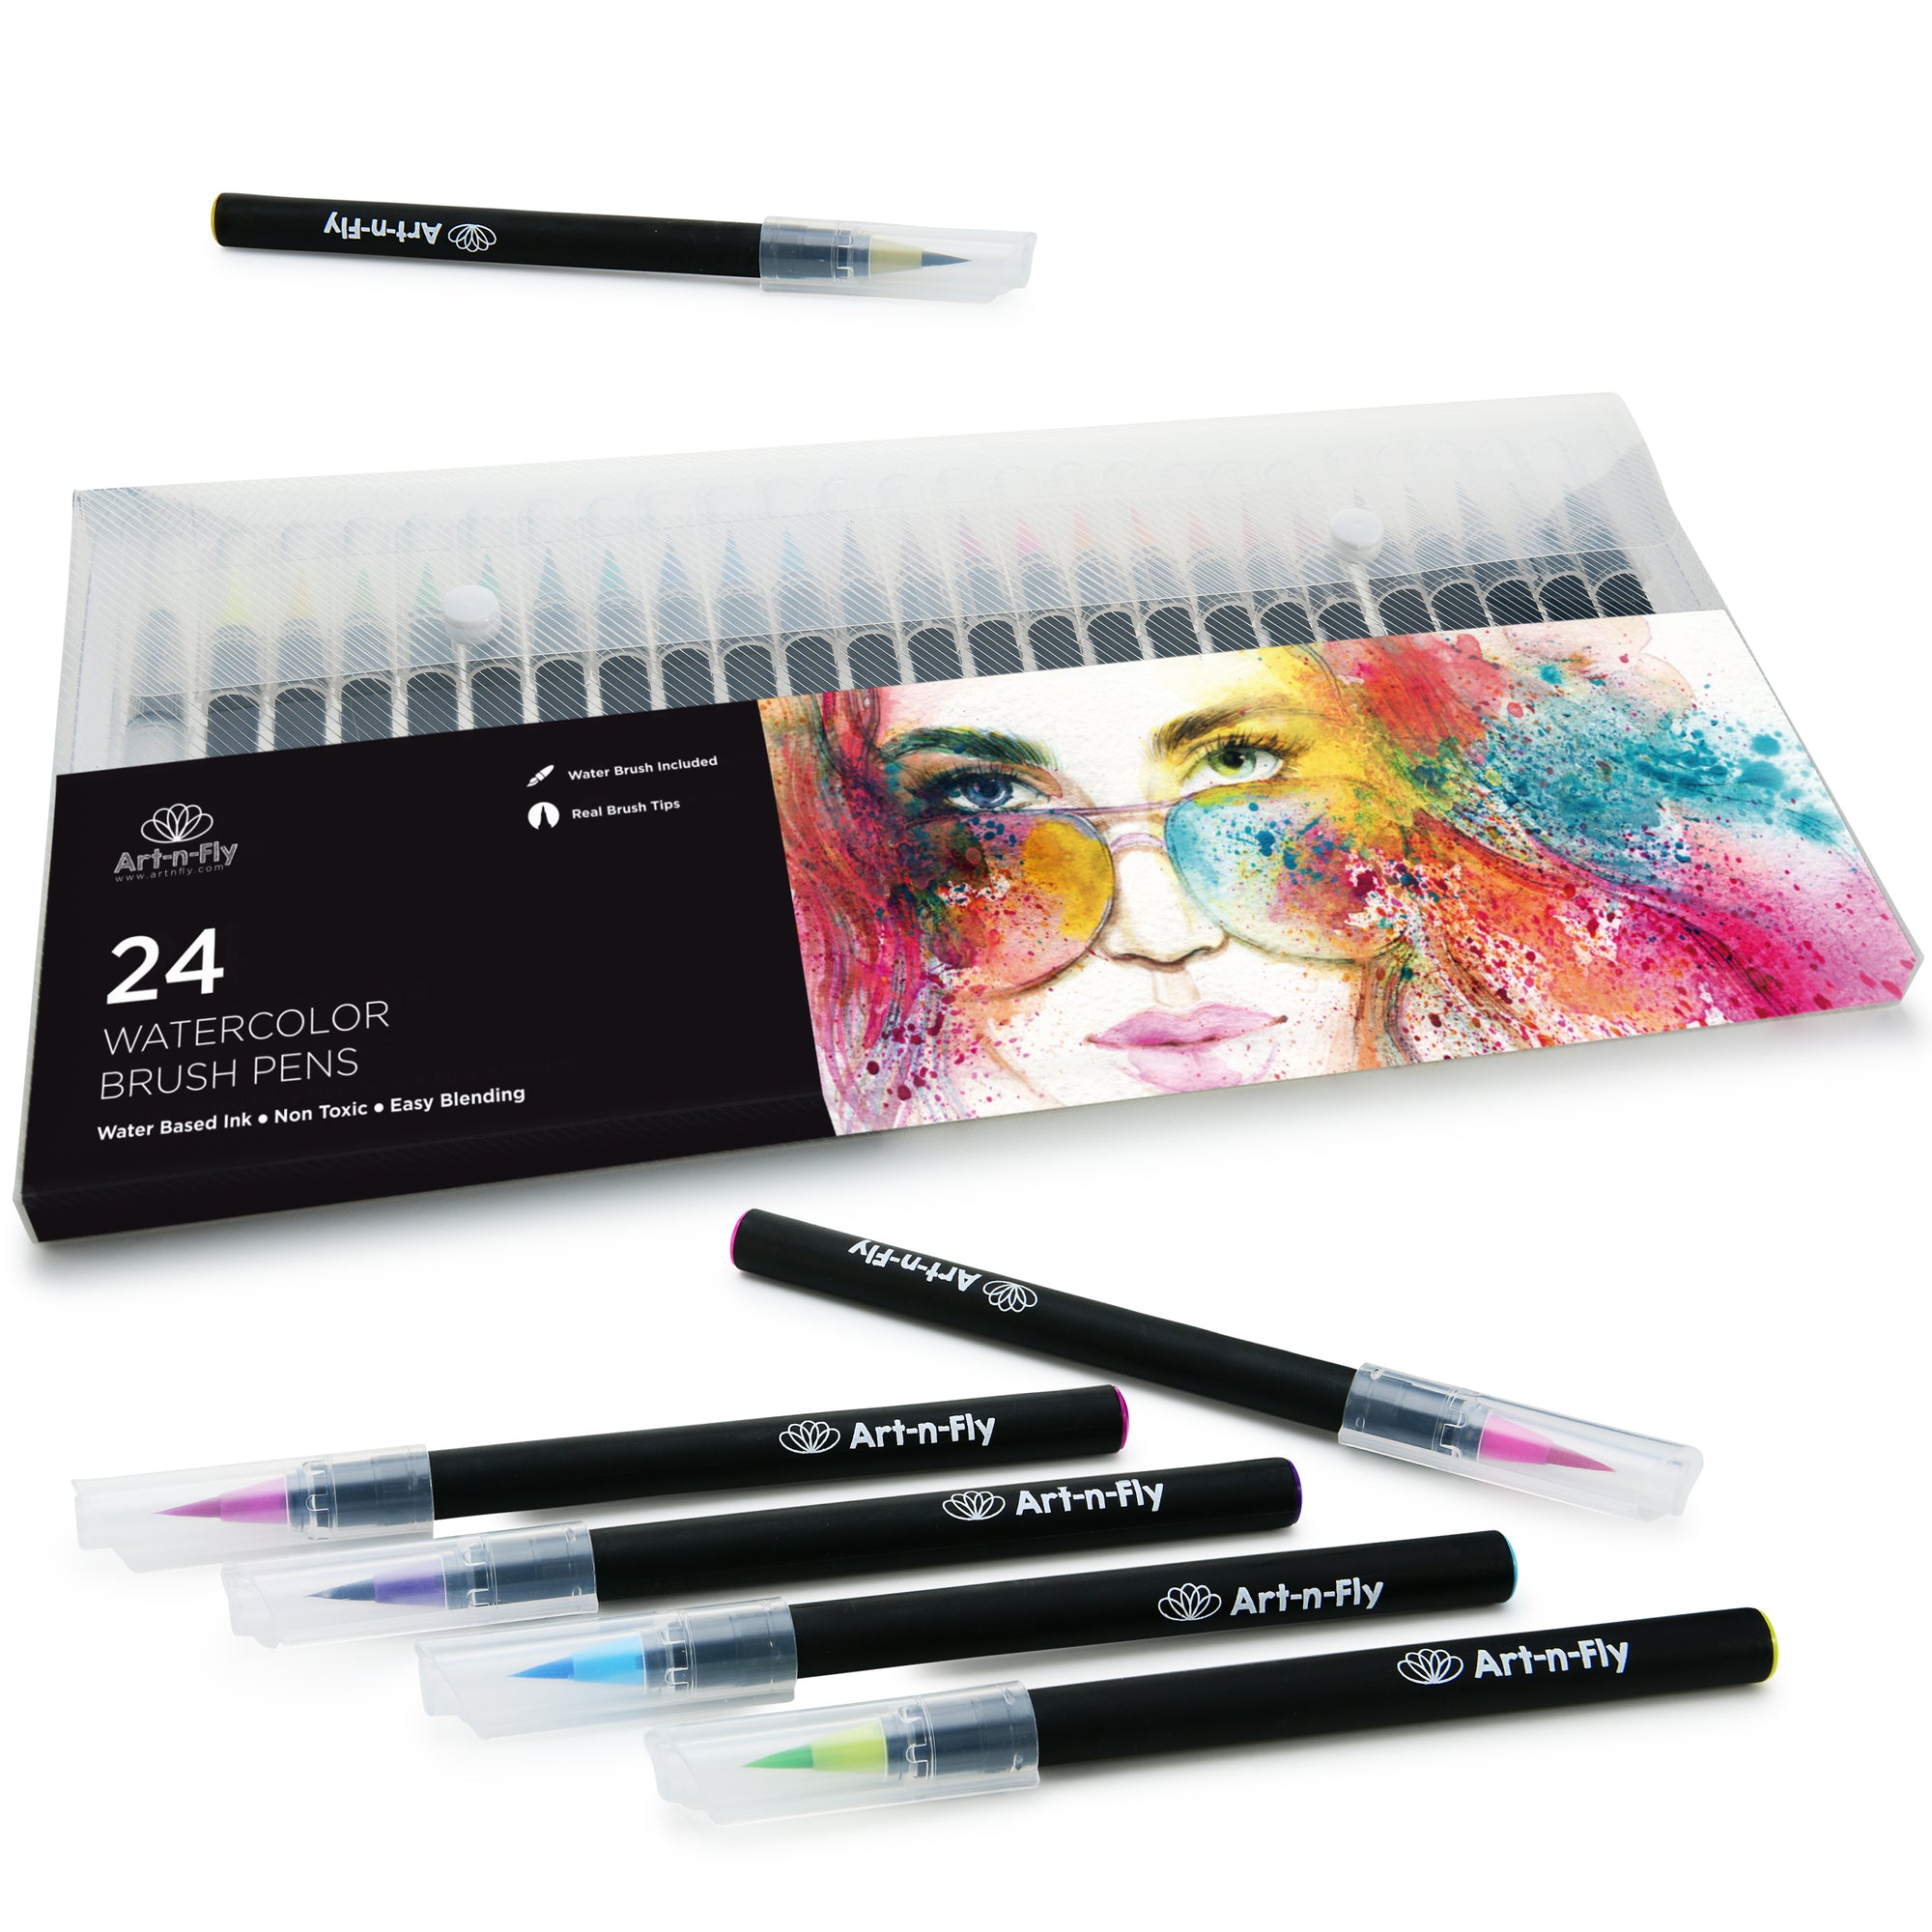 Pilot Ensō Watercolor Brush Pens 8 Piece Set